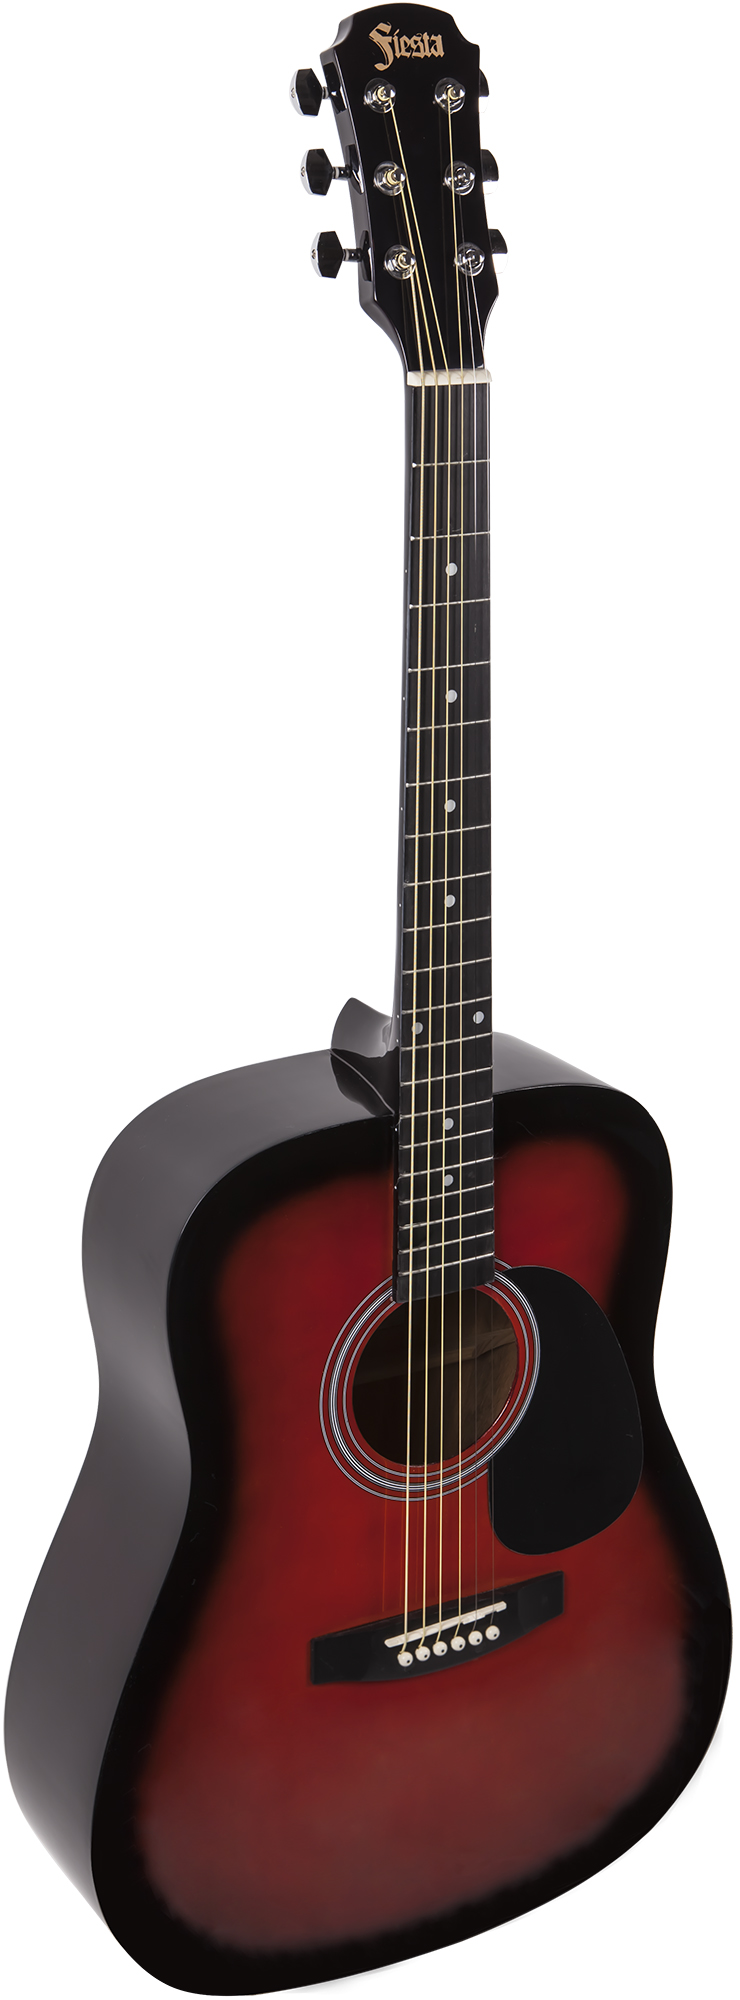 Акустические гитары Aria FIESTA FST-300 BS акустические гитары ditson g 10